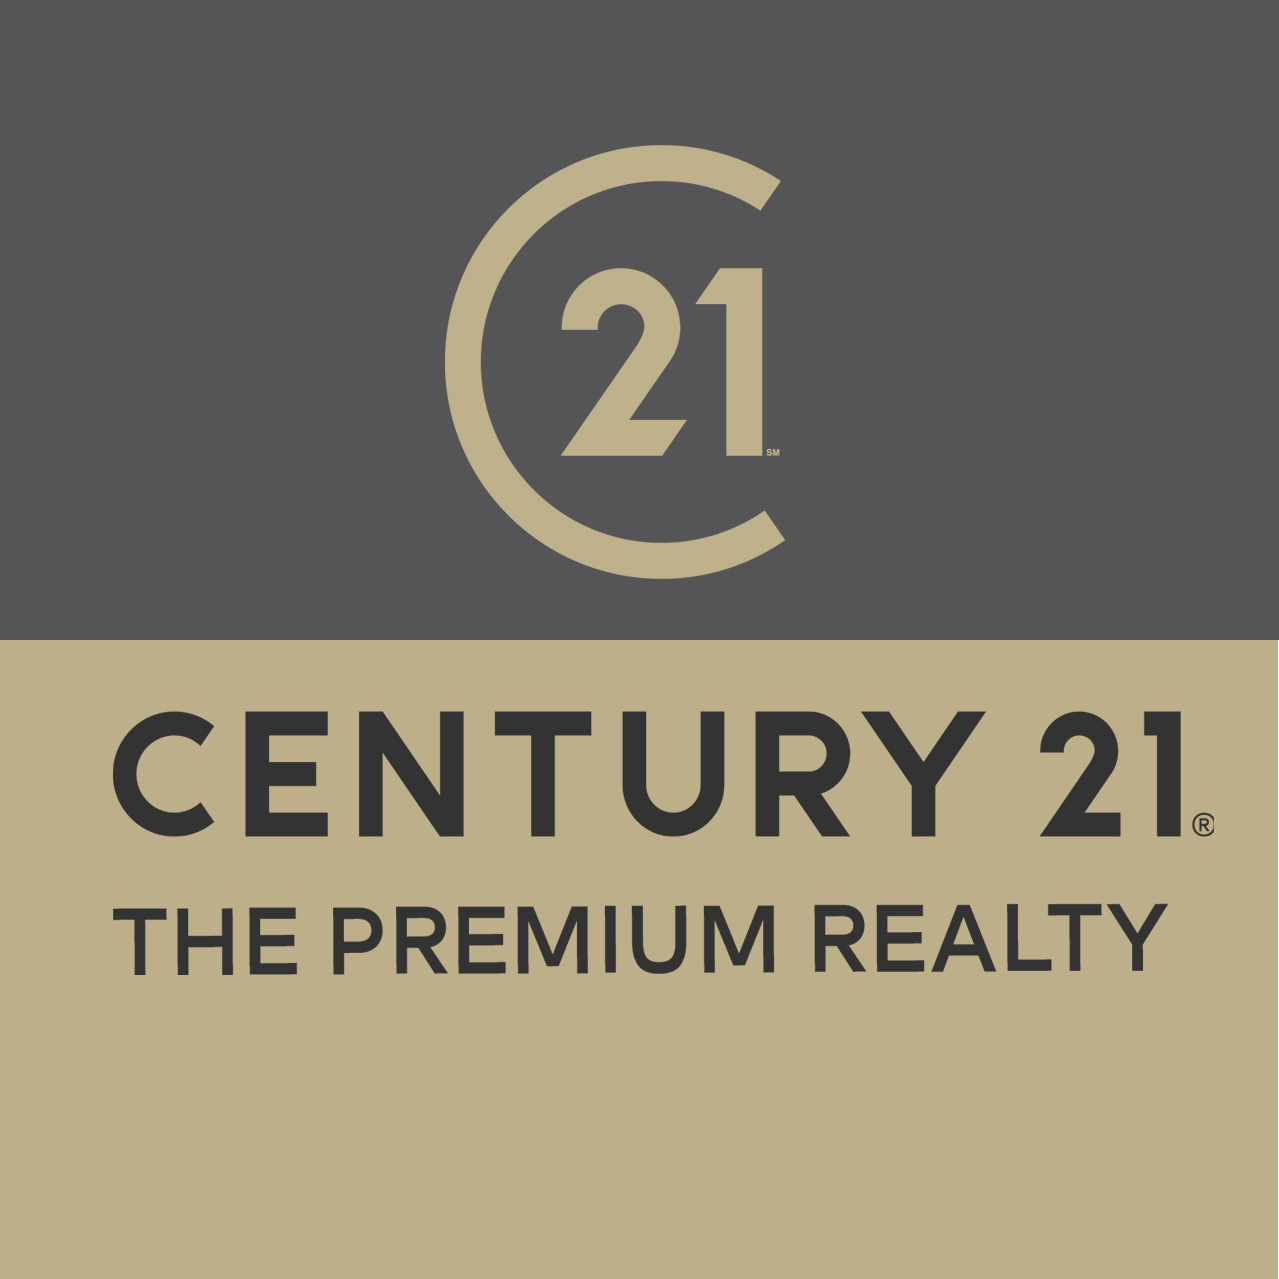 The Premium Realty